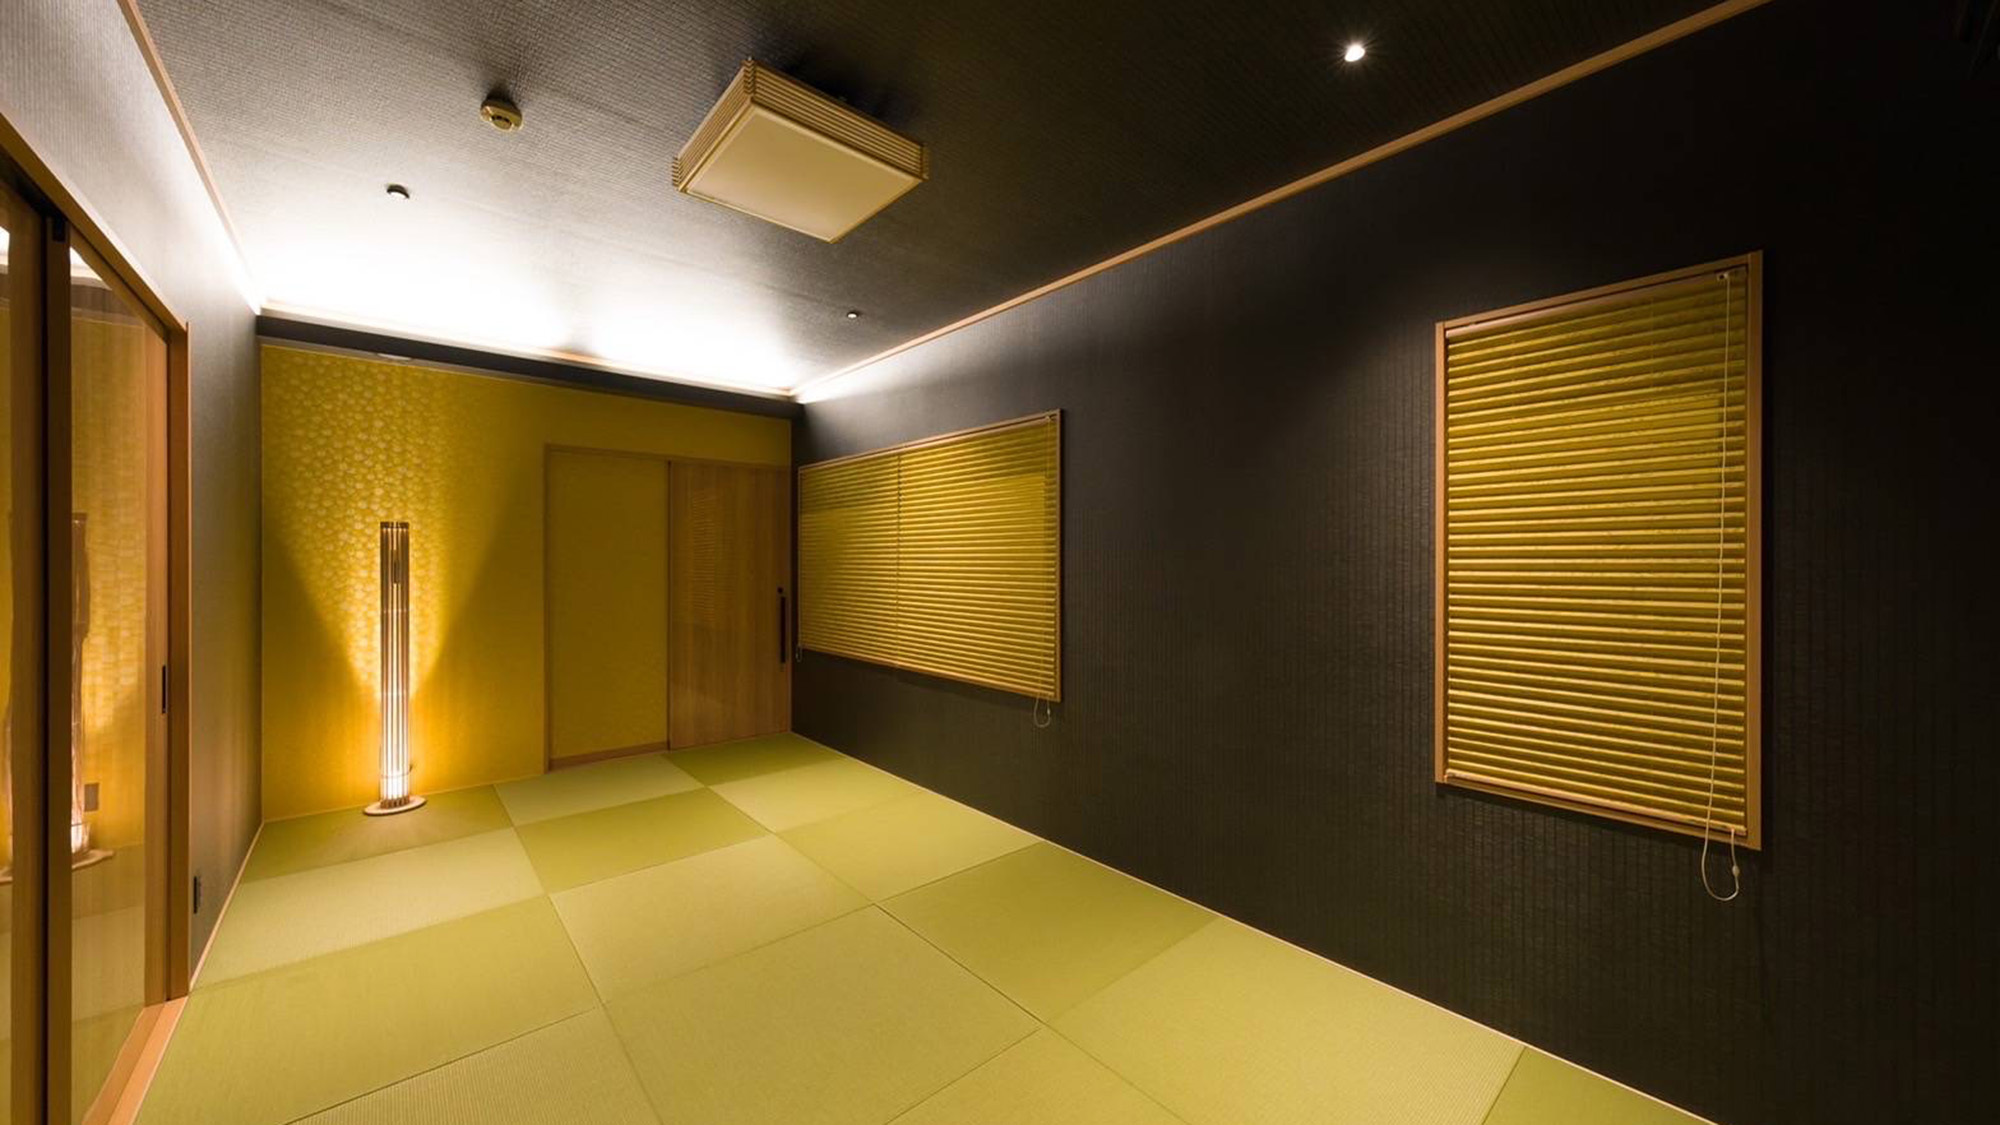 ・【本館・和室】琉球畳を贅沢に使用した和室はゆったりと落ち着ける癒しの空間